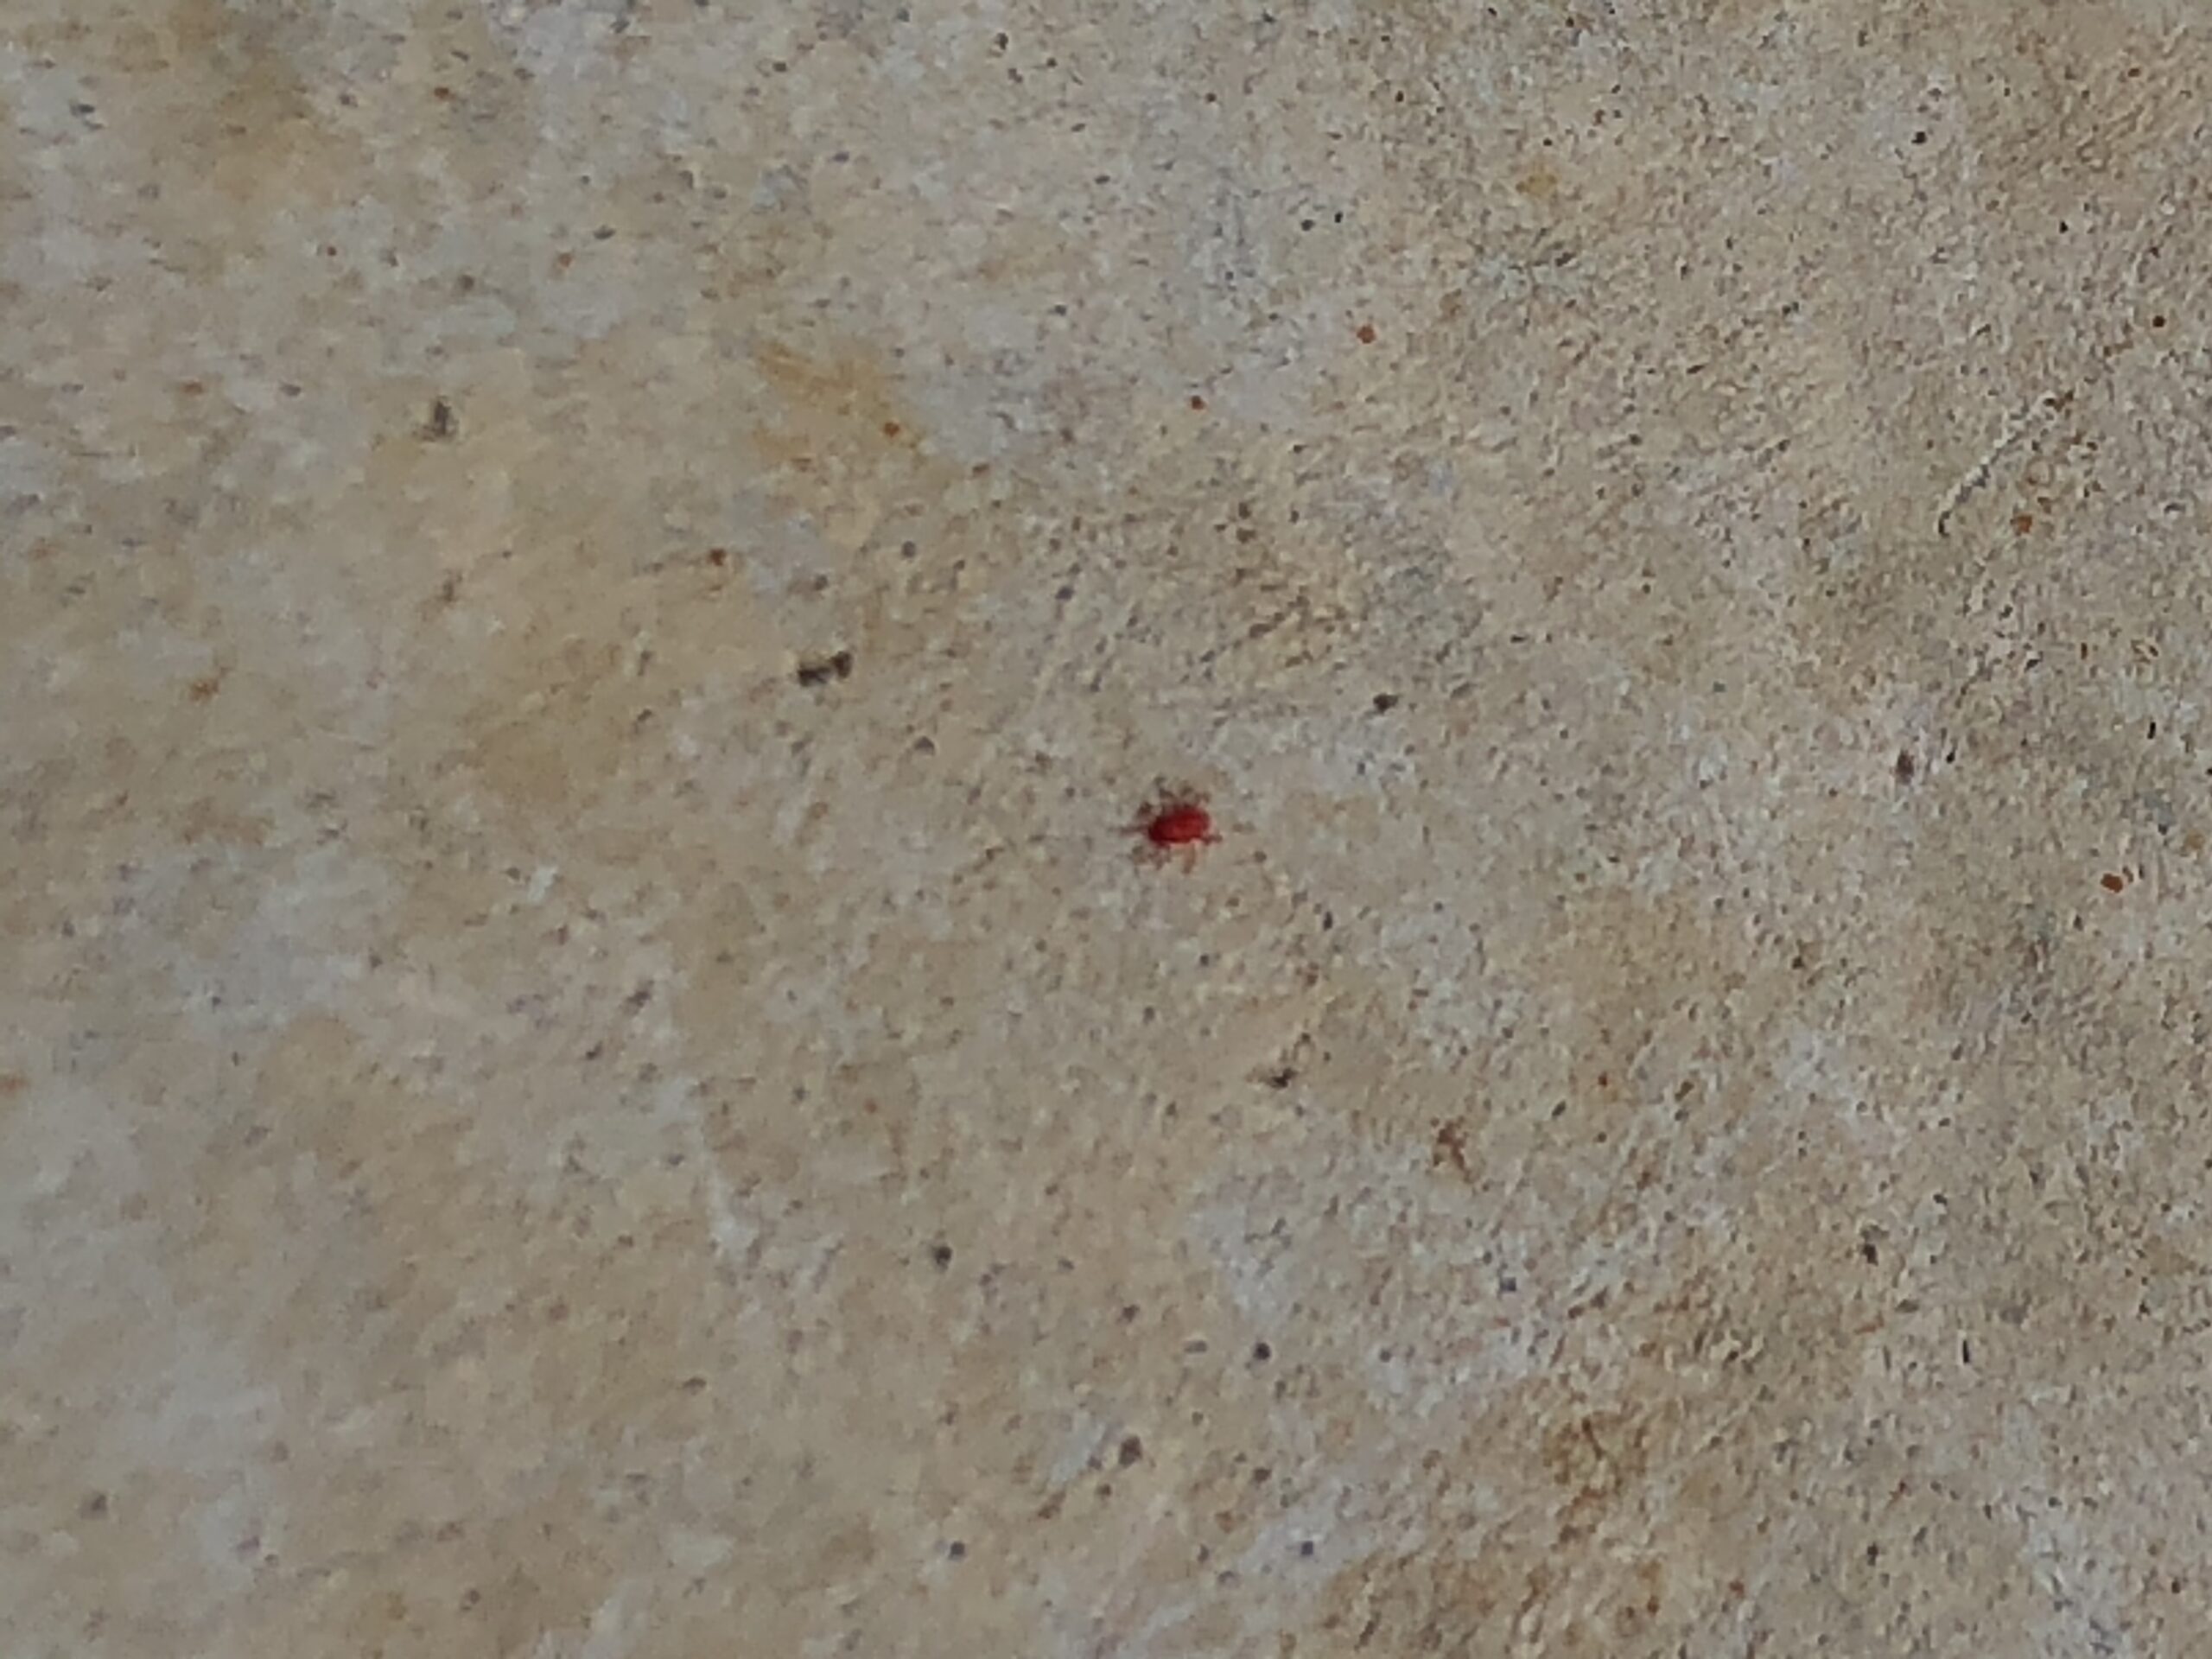 小さな赤い虫とはどんな虫 赤いダニ 刺したり咬んだりするの